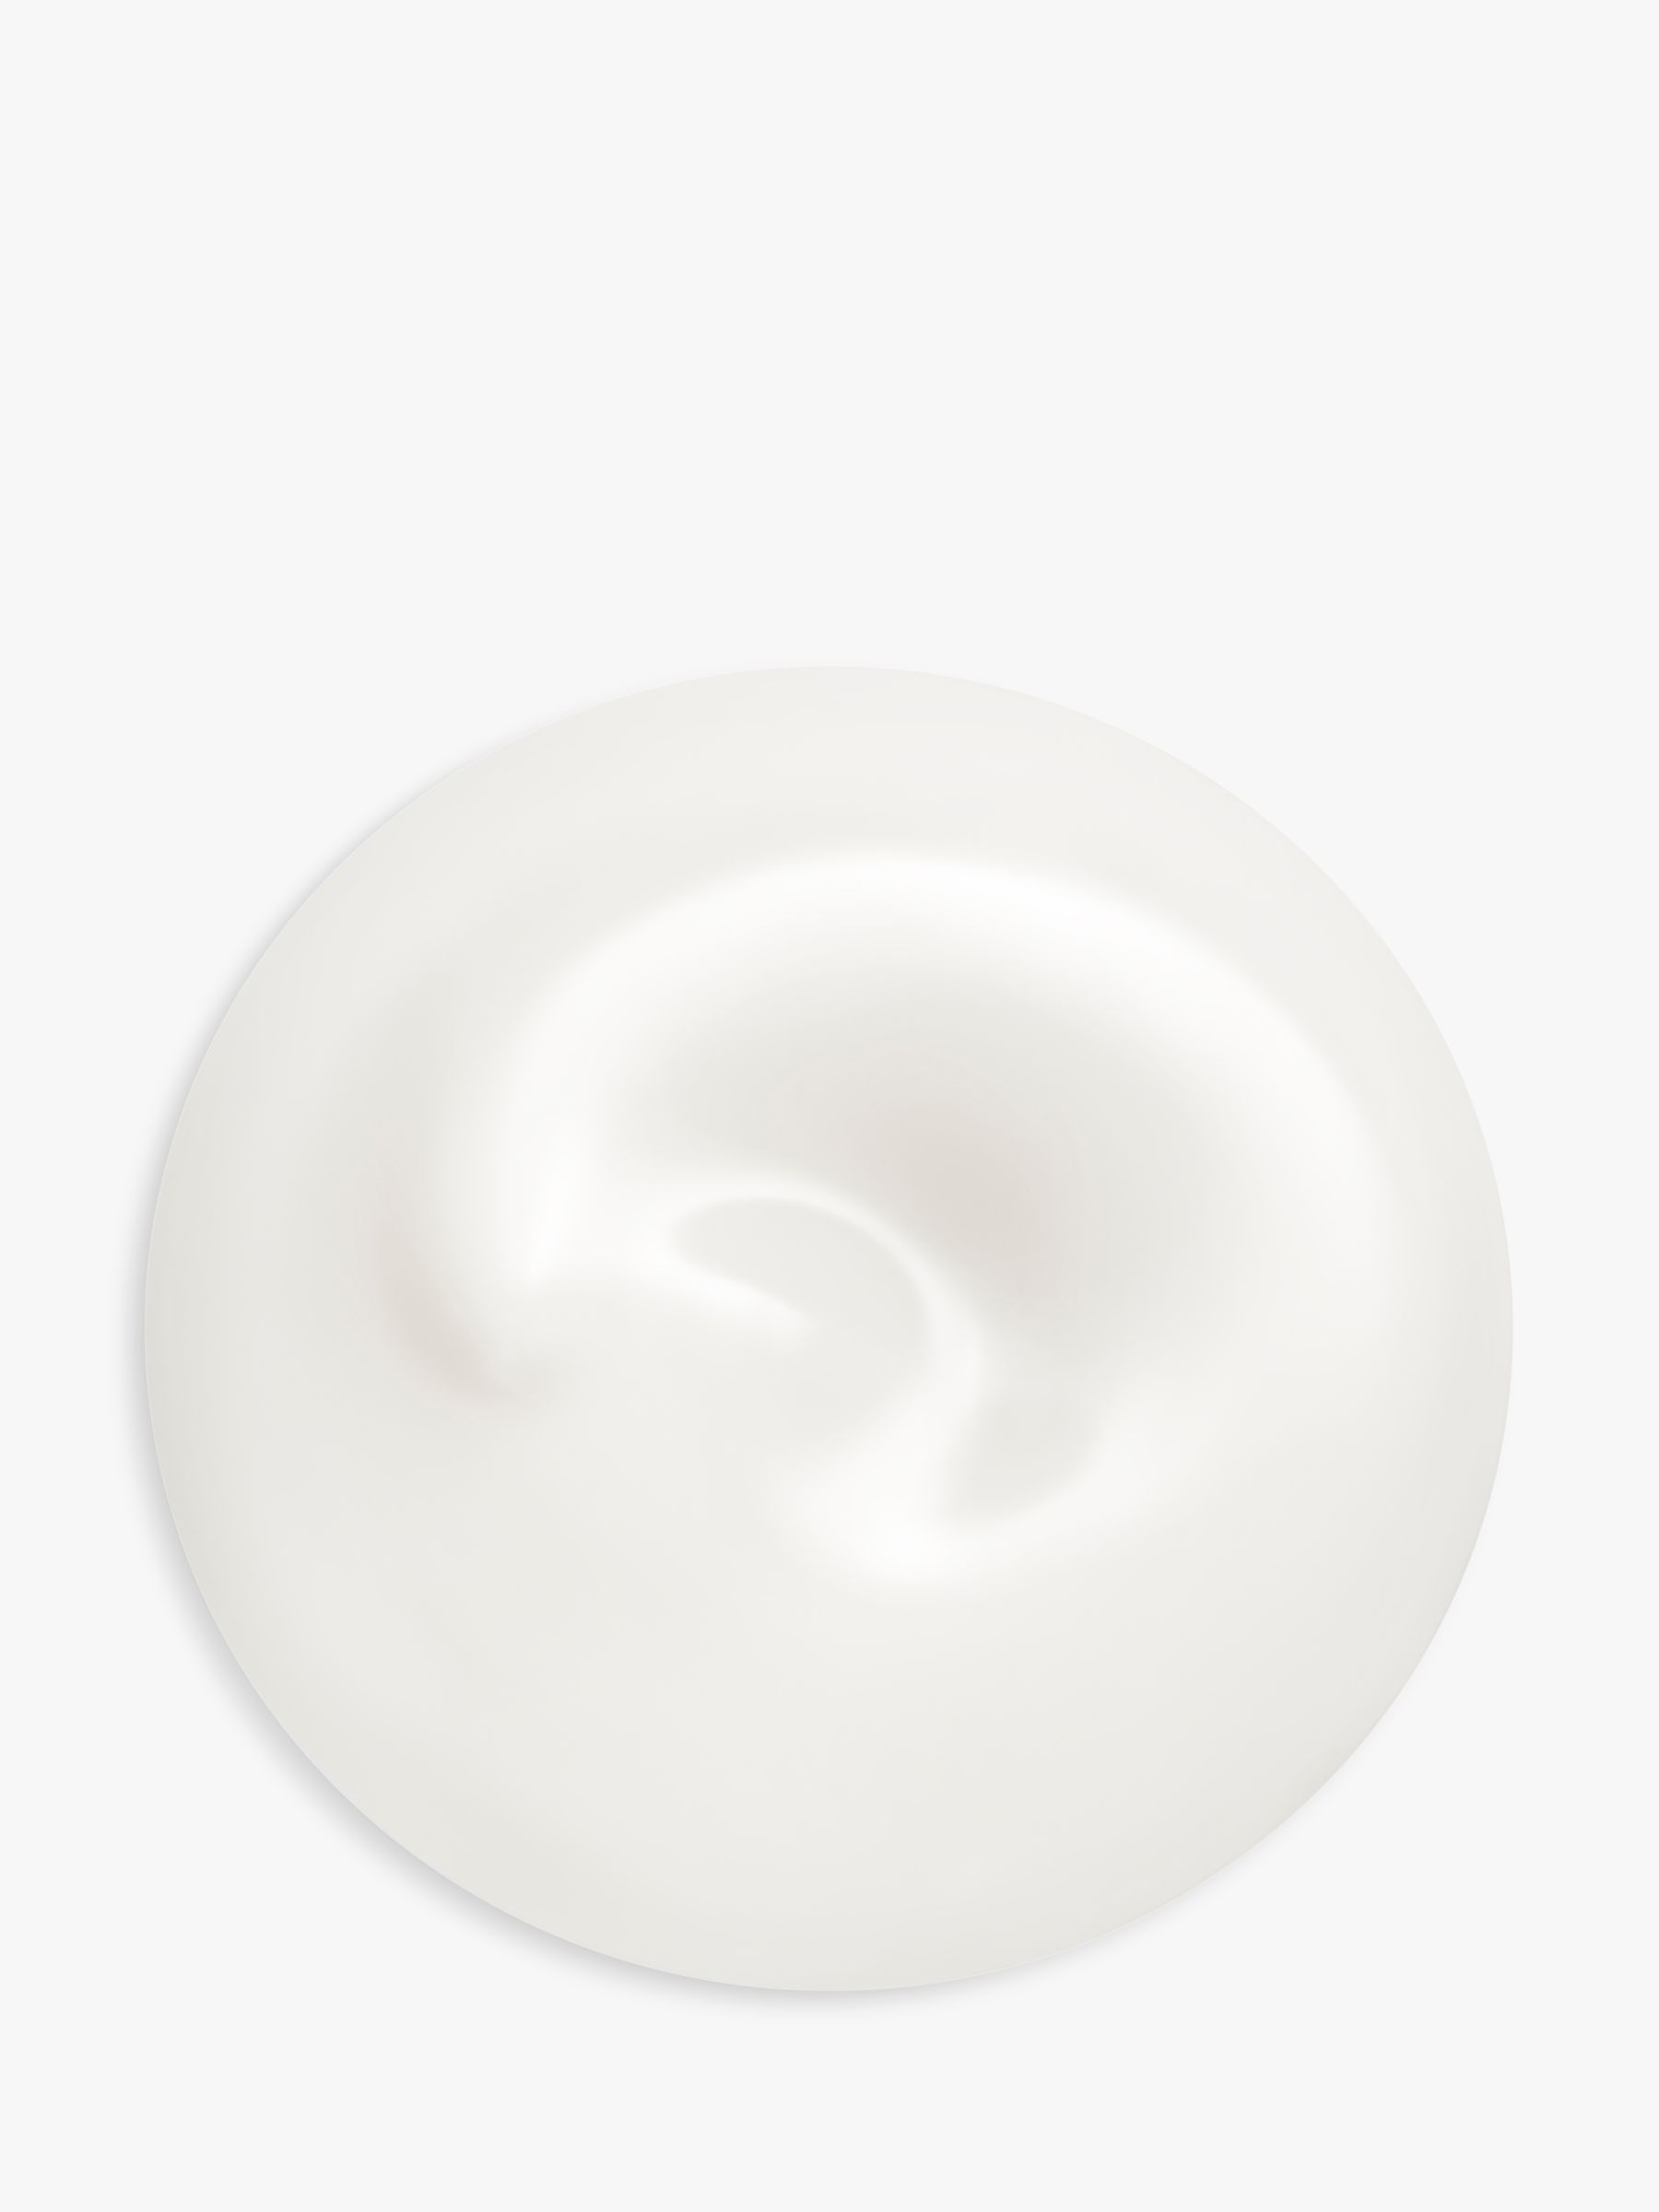 Shiseido Men Total Revitalizer Light Fluid, 70ml 3